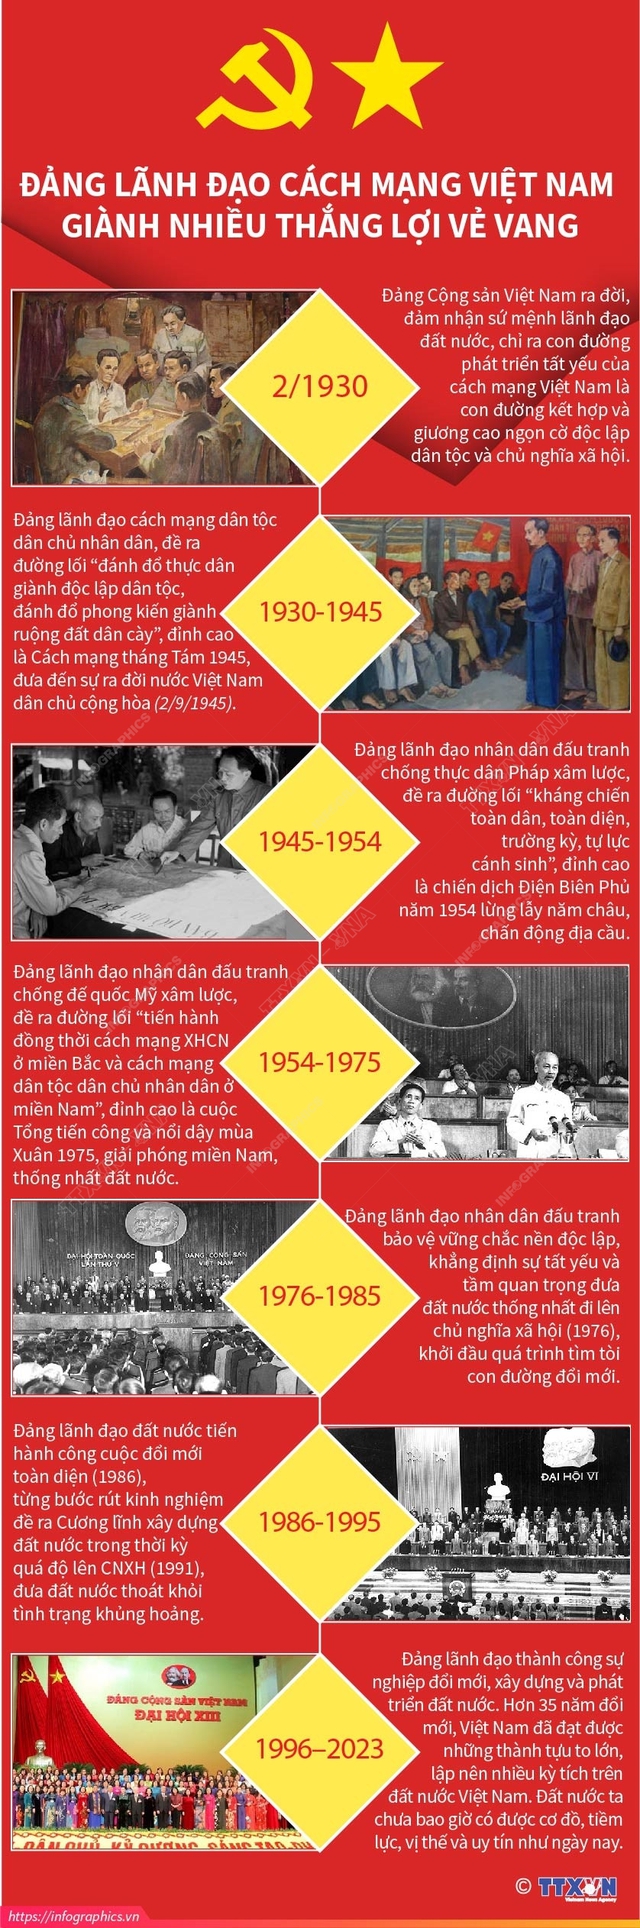 Đảng lãnh đạo cách mạng Việt Nam giành nhiều thắng lợi vẻ vang - Ảnh 1.